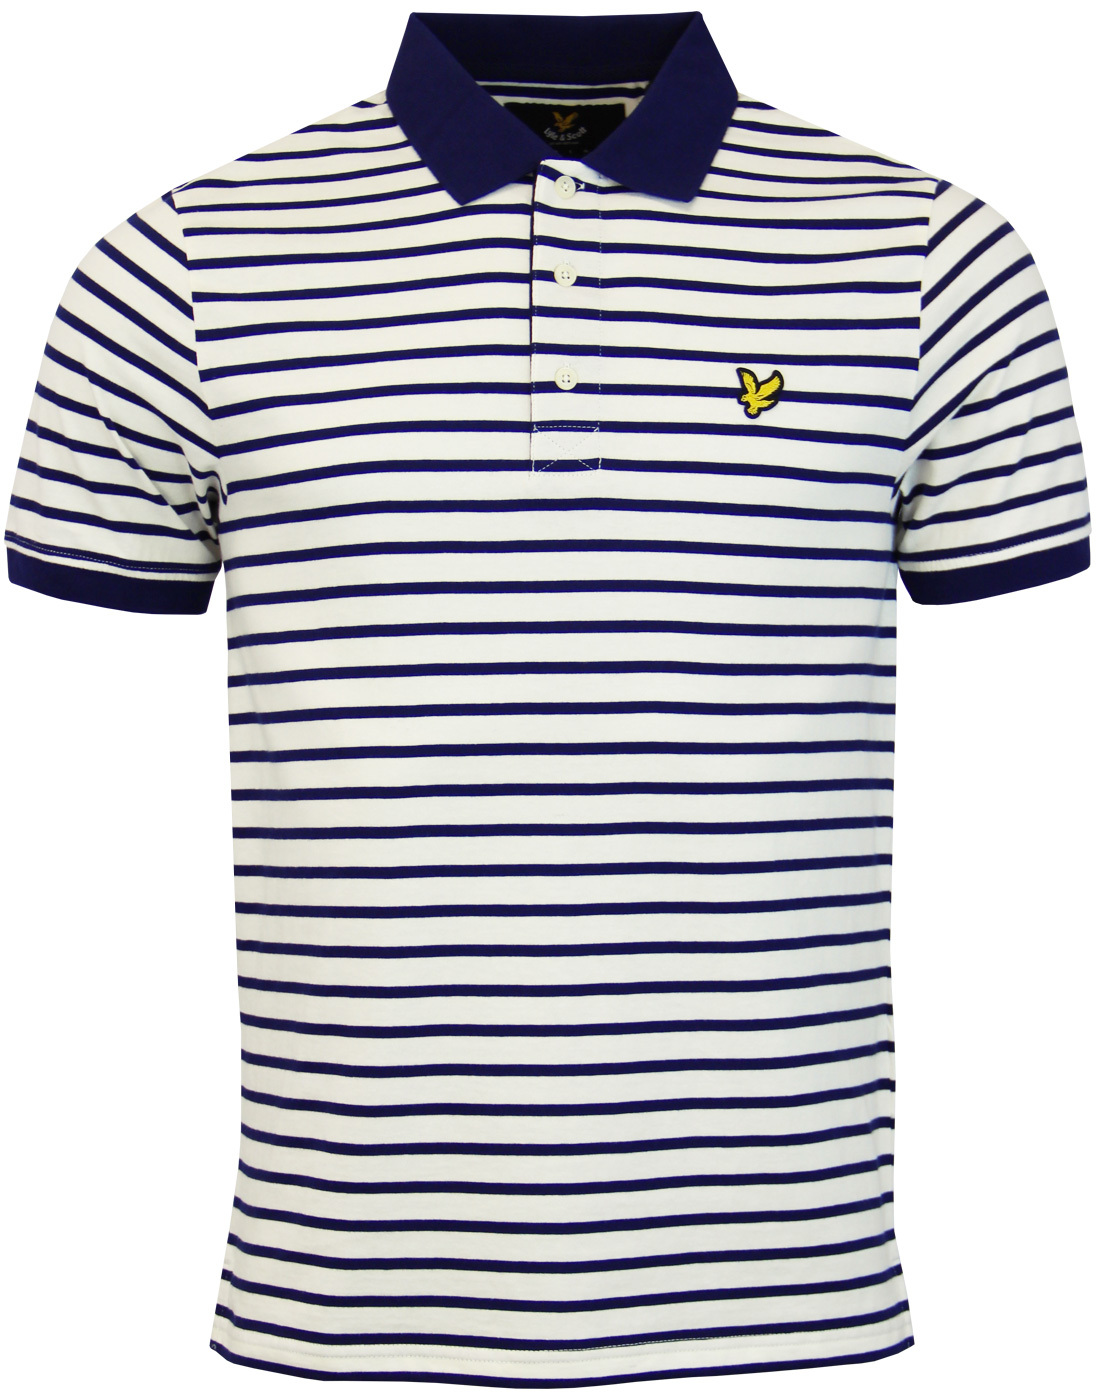 LYLE & SCOTT Men's Retro 1960s Mod Breton Stripe Polo Shirt